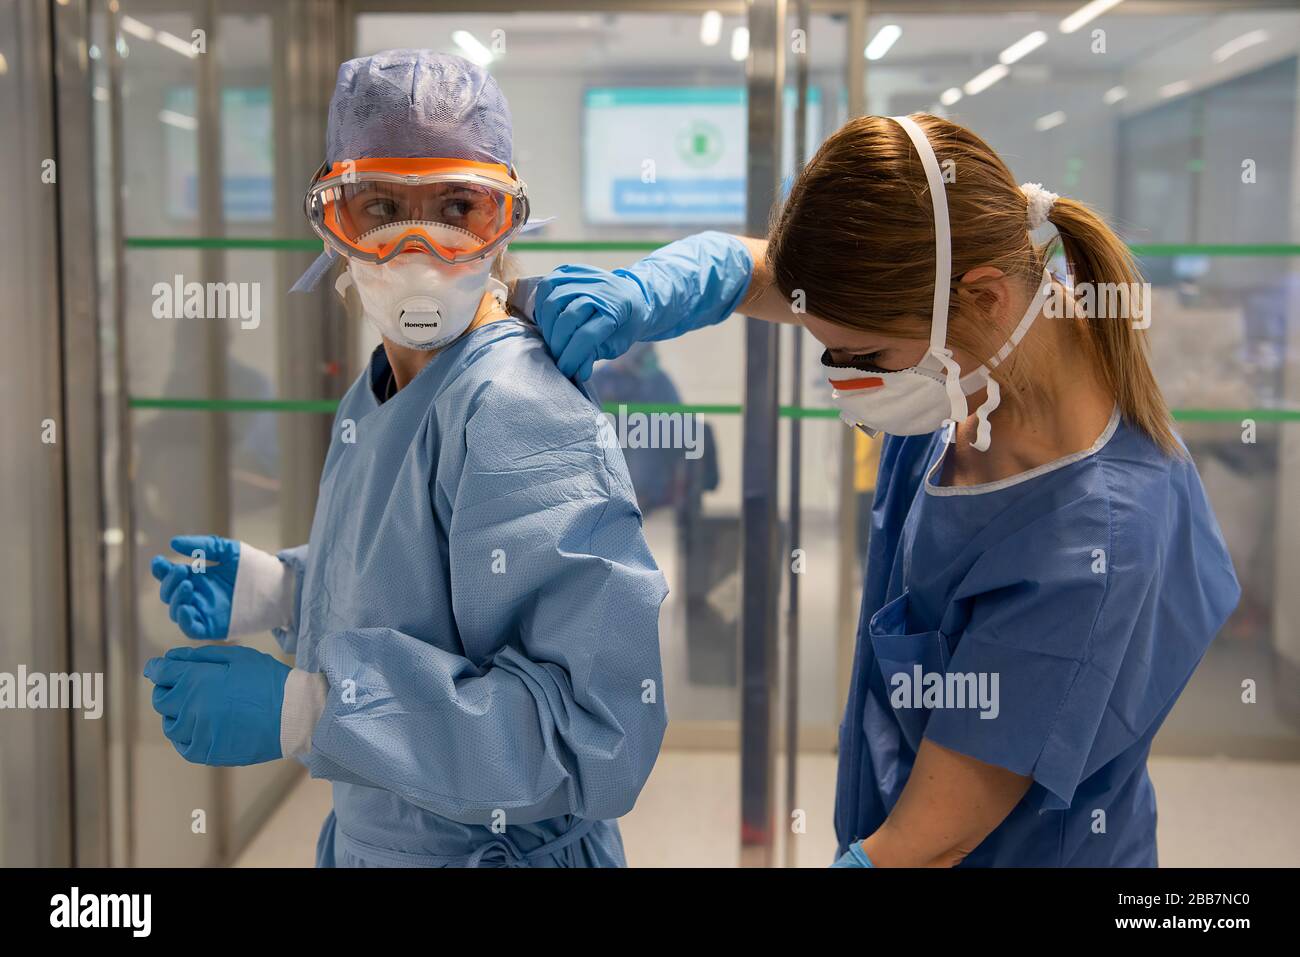 Los médicos de Barcelona, España, prueban y tratan a los pacientes que padecen COVID-19. Todos los trabajadores utilizan el equipo de protección personal (EPI) adecuado. (FOTO: CLÍNICA hospitalaria - Barcelona) Foto de stock